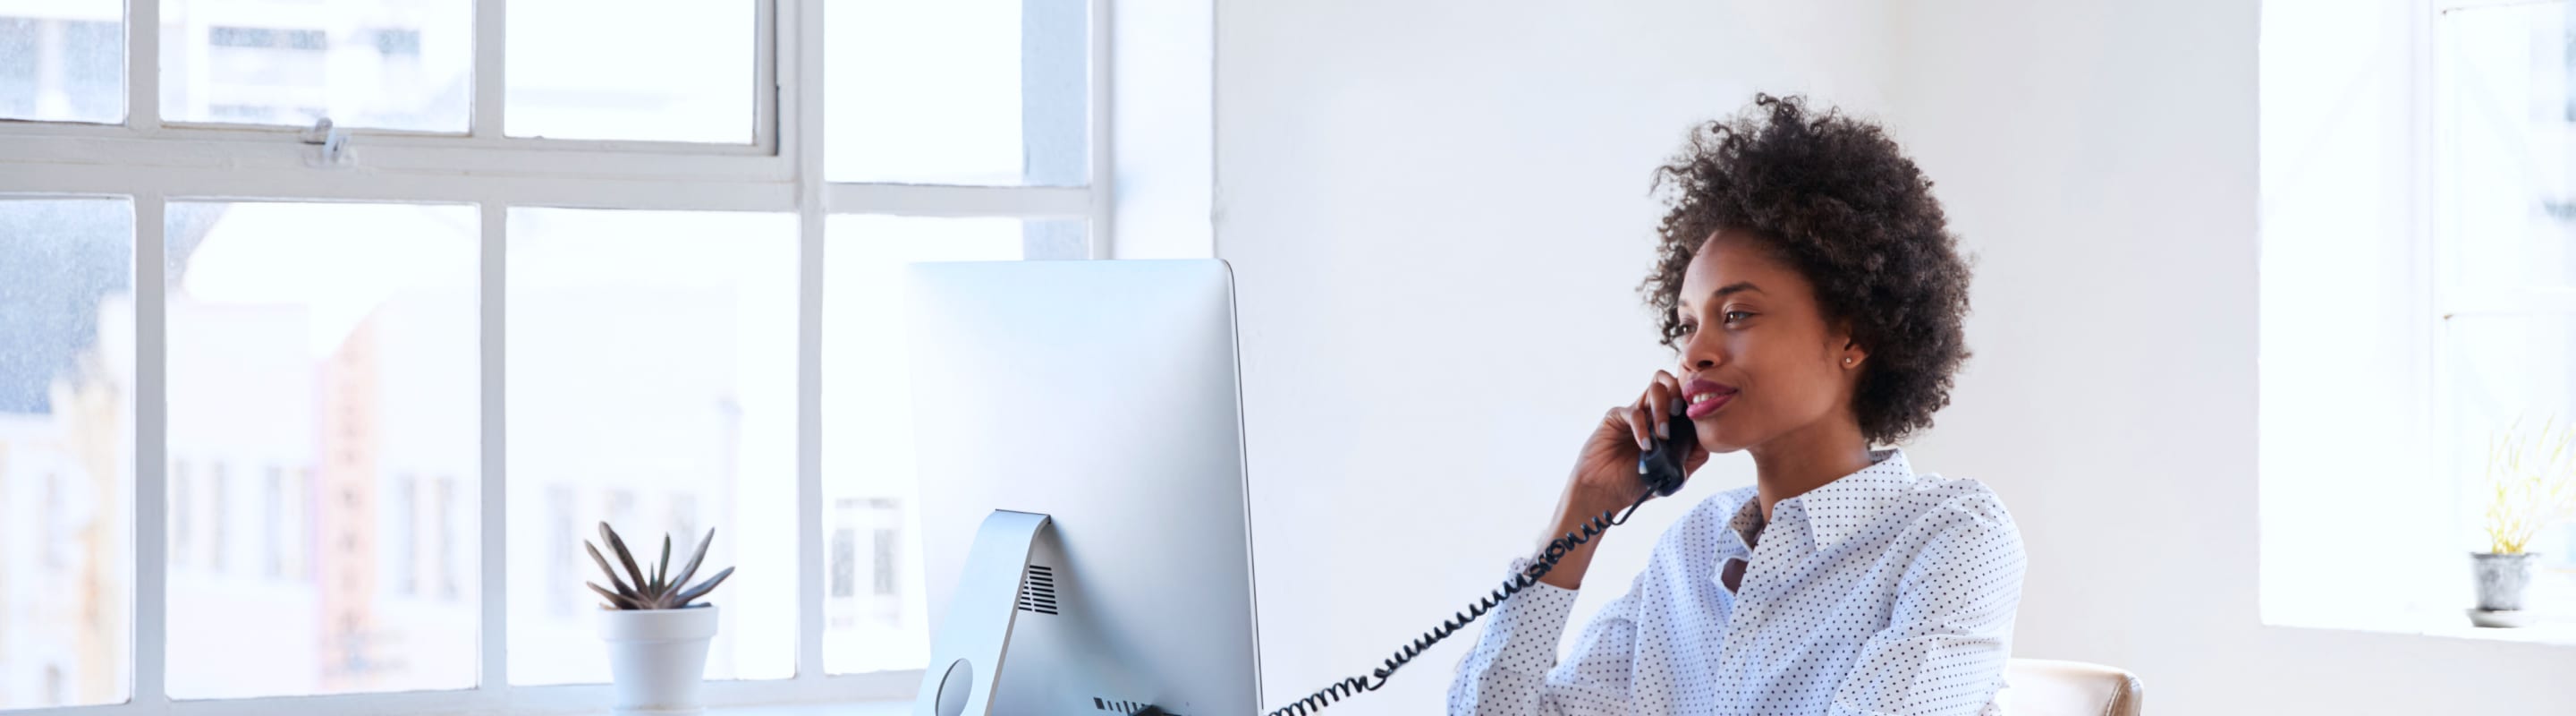 Un employé utilise une solution vocale de Bell pour communiquer avec ses clients, ses collègues et ses partenaires afin de maintenir les activités essentielles de l’entreprise.